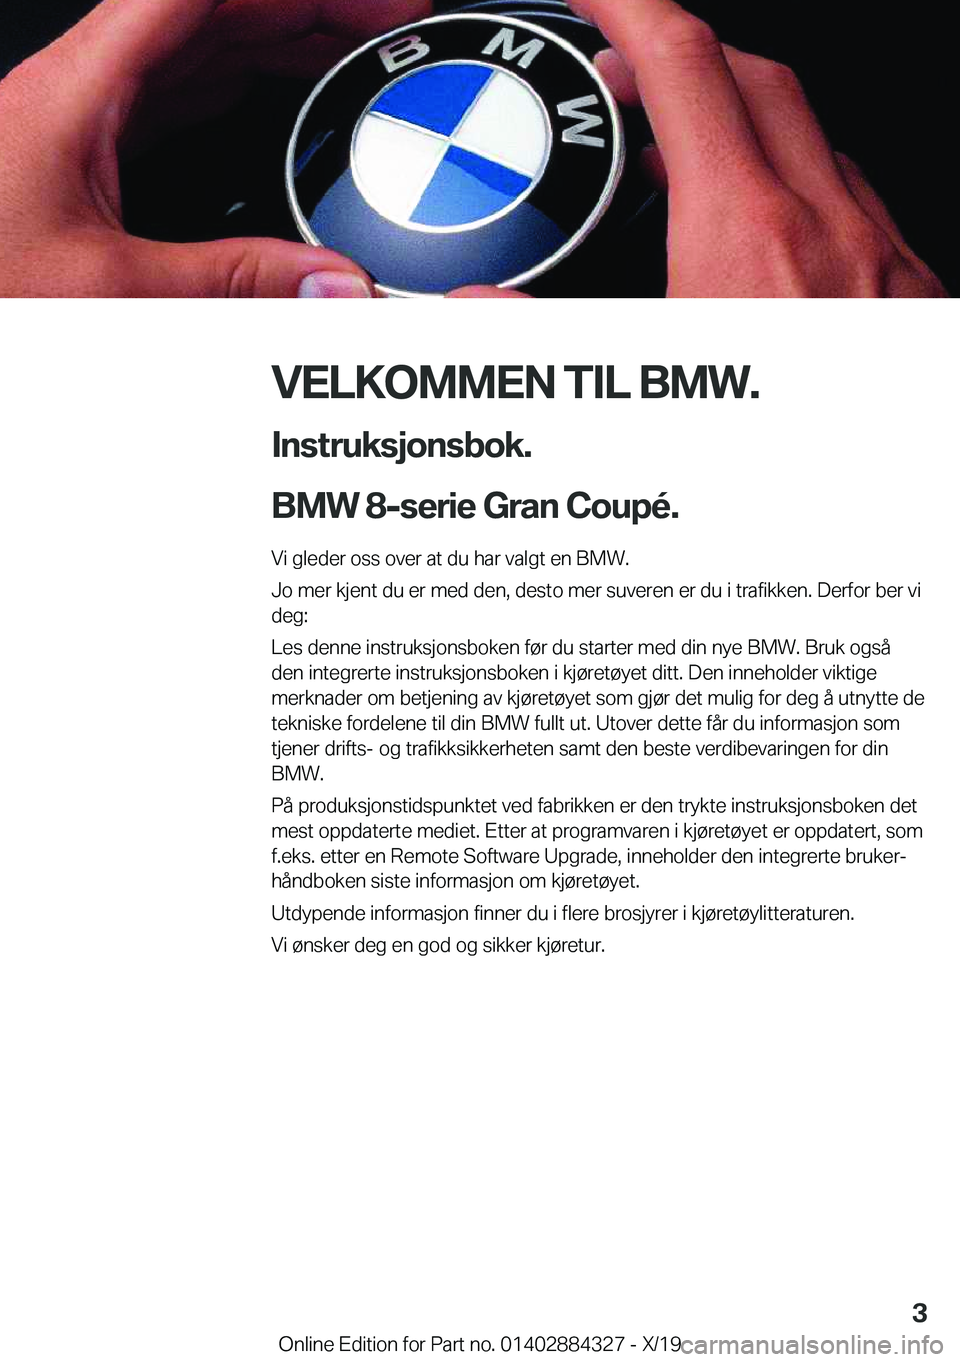 BMW 8 SERIES GRAN COUPE 2020  InstruksjonsbØker (in Norwegian) �V�E�L�K�O�M�M�E�N��T�I�L��B�M�W�.�I�n�s�t�r�u�k�s�j�o�n�s�b�o�k�.
�B�M�W��8�-�s�e�r�i�e��G�r�a�n��C�o�u�p�